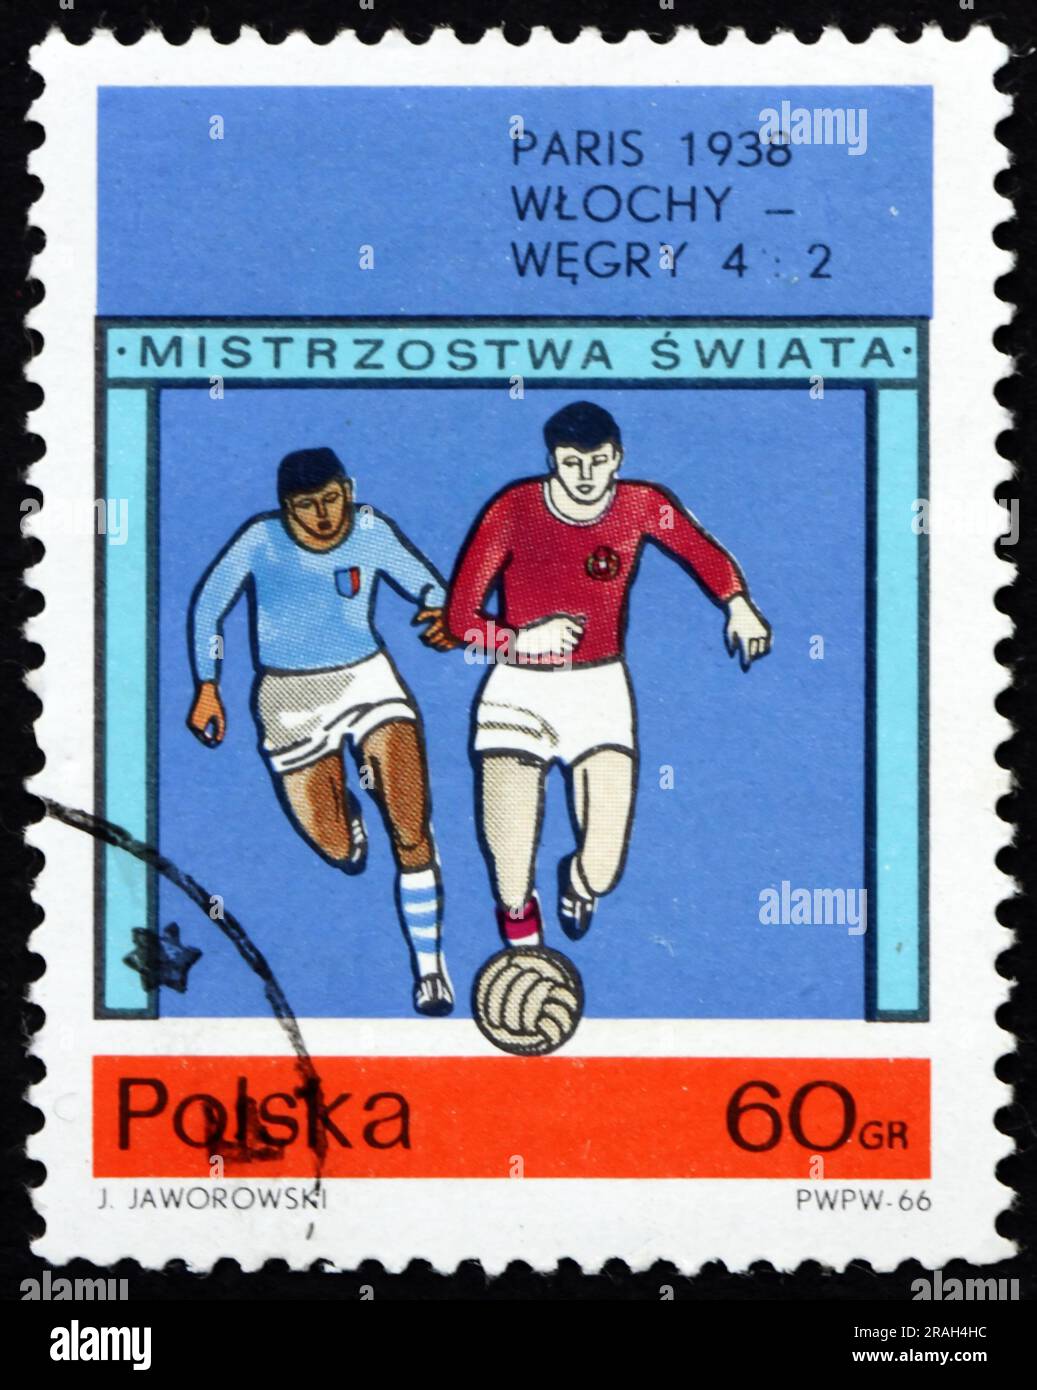 POLEN - CA. 1966: Ein in Polen gedruckter Stempel zeigt das endgültige Fußballspiel der Weltmeisterschaft 1938, Paris, ca. 1966 Stockfoto